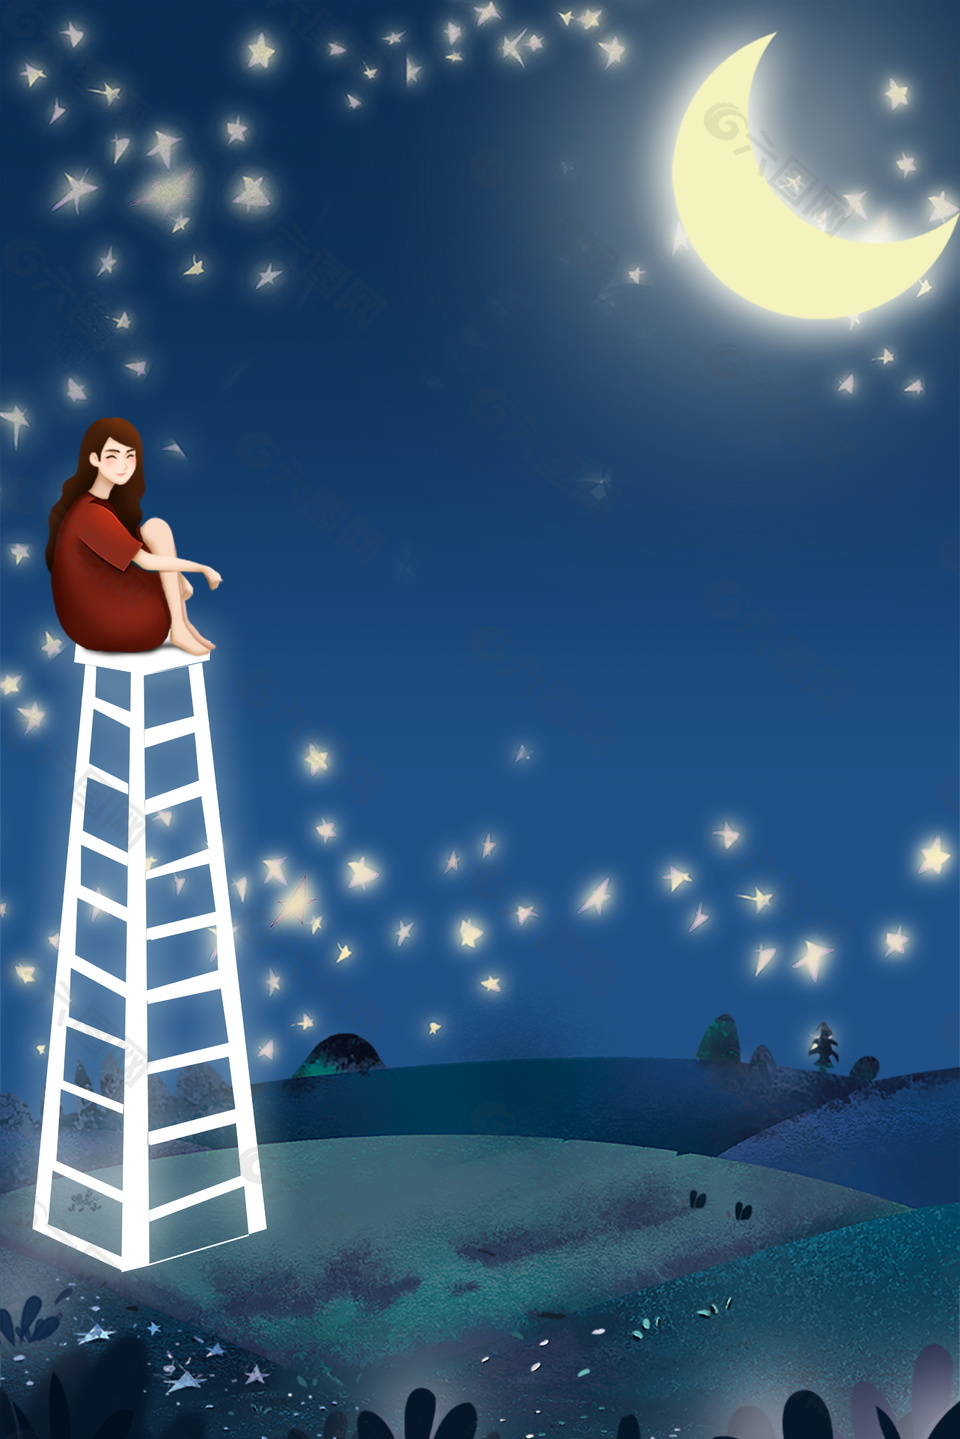 炫白弯月高架上的女孩仲夏之夜背景素材